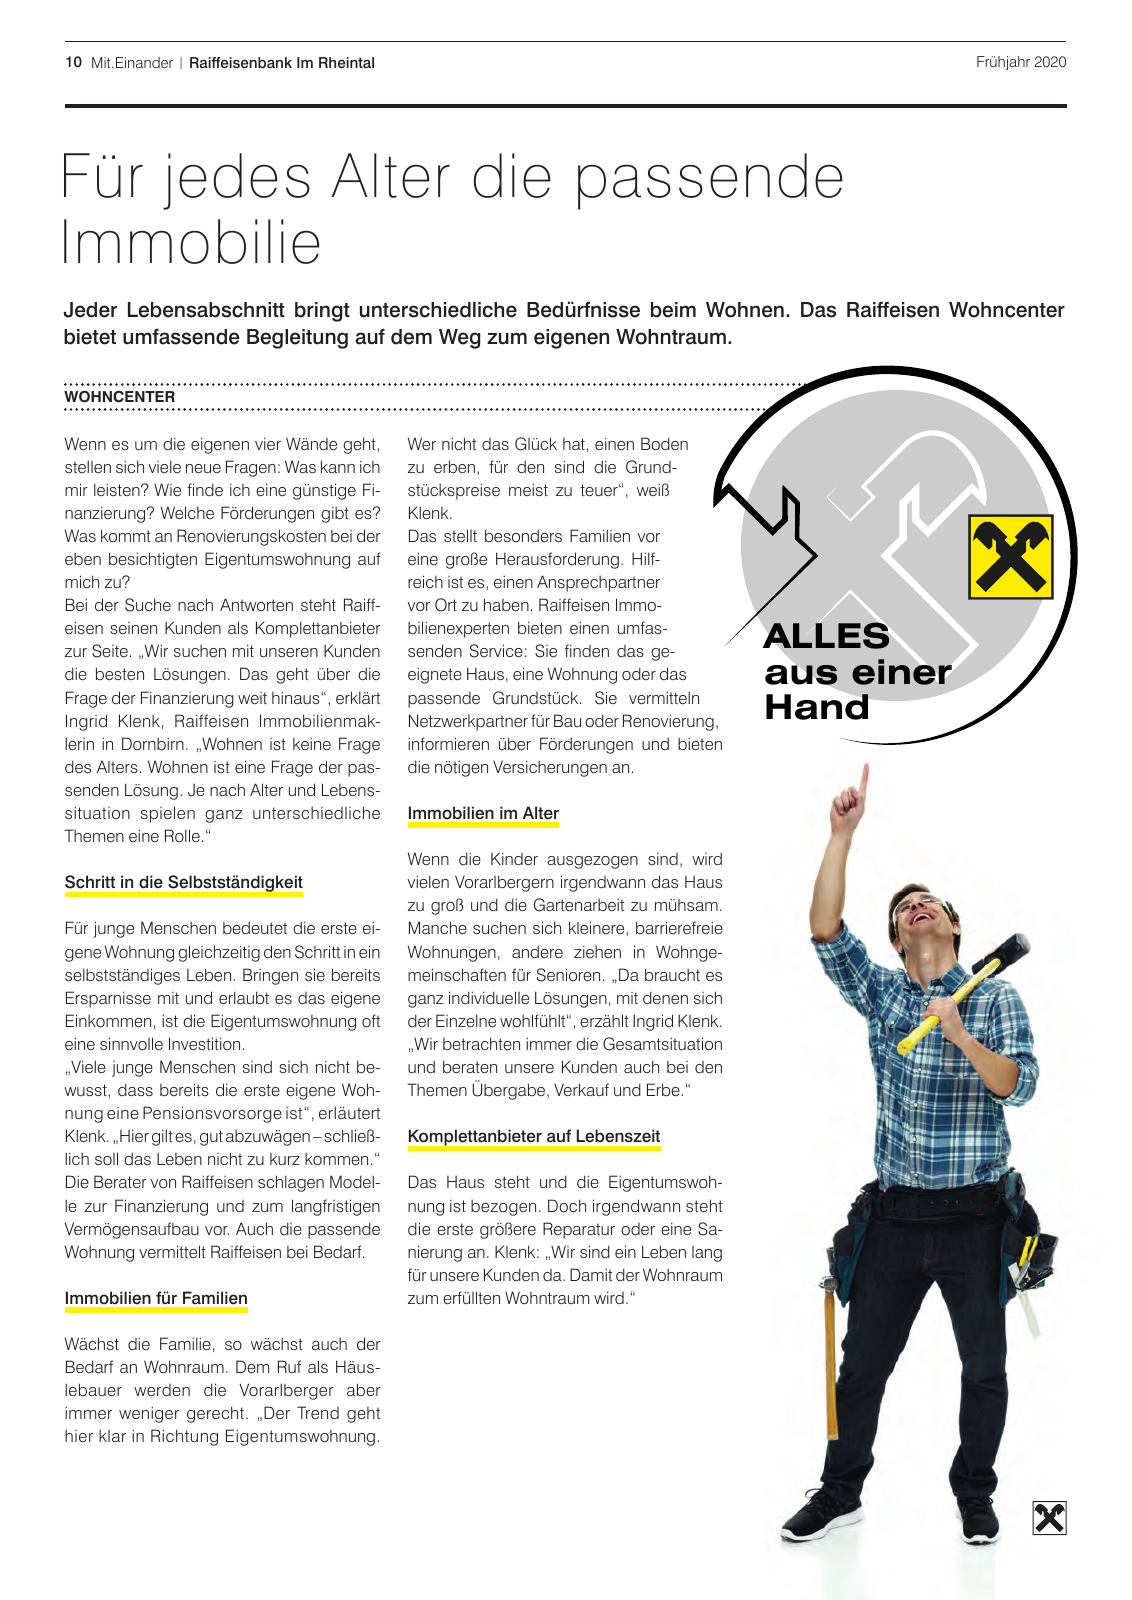 Vorschau Mitgliederzeitung Rheintal 2020 Frühjahr Seite 10